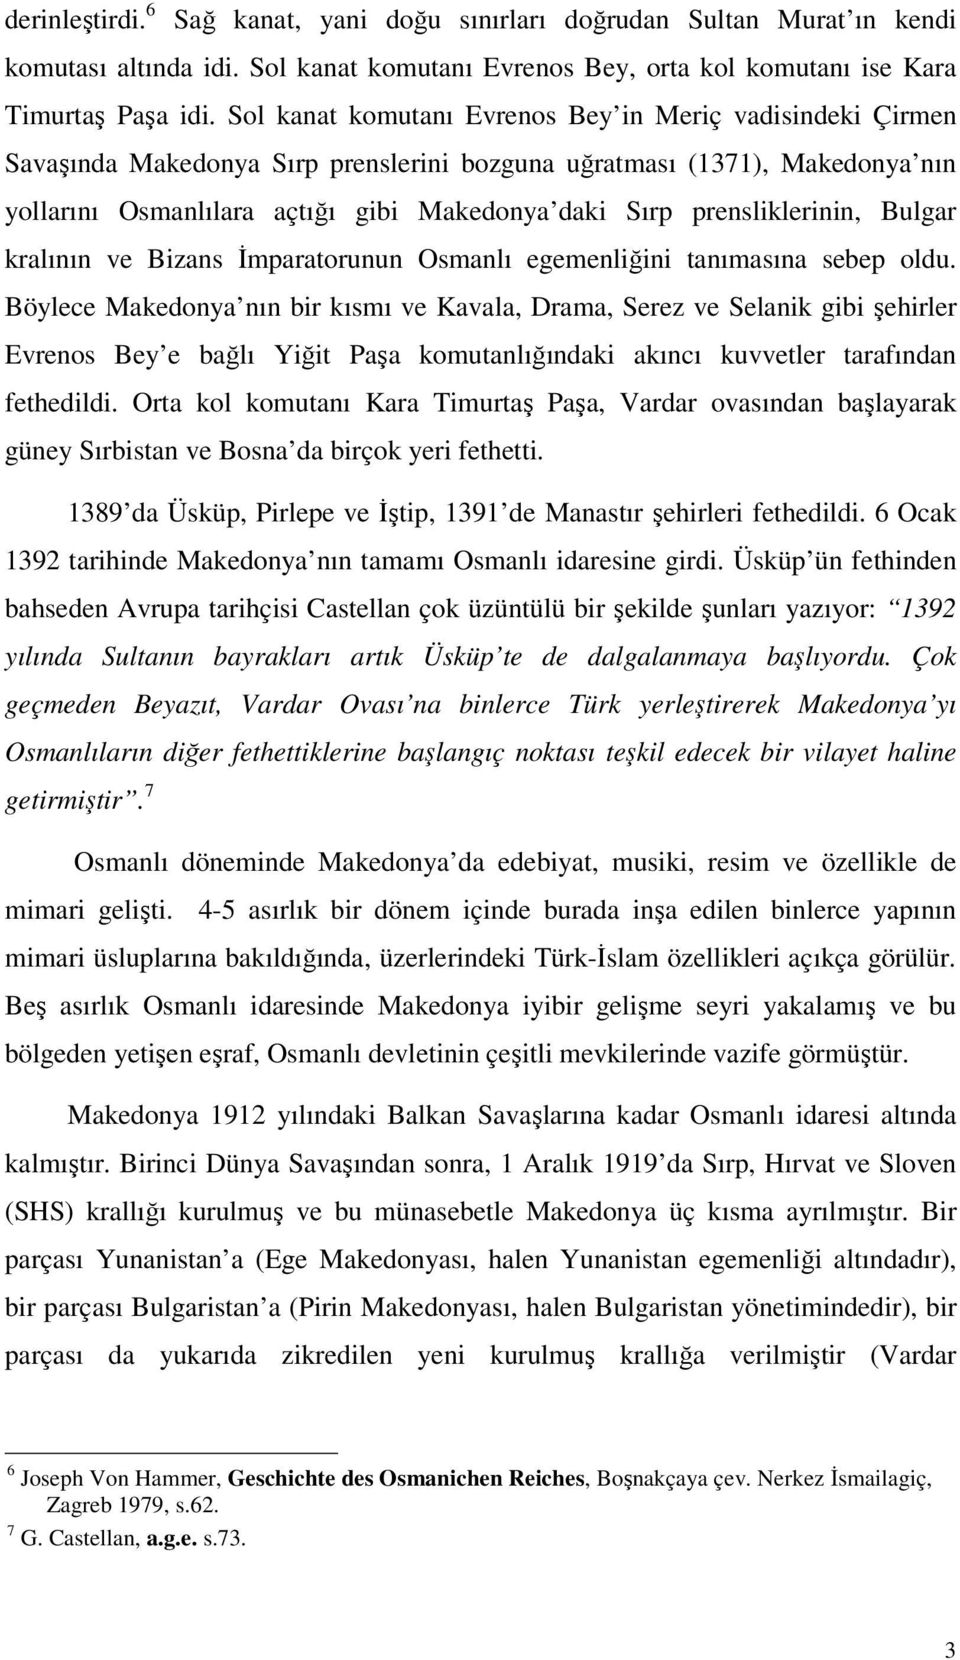 prensliklerinin, Bulgar kralının ve Bizans İmparatorunun Osmanlı egemenliğini tanımasına sebep oldu.